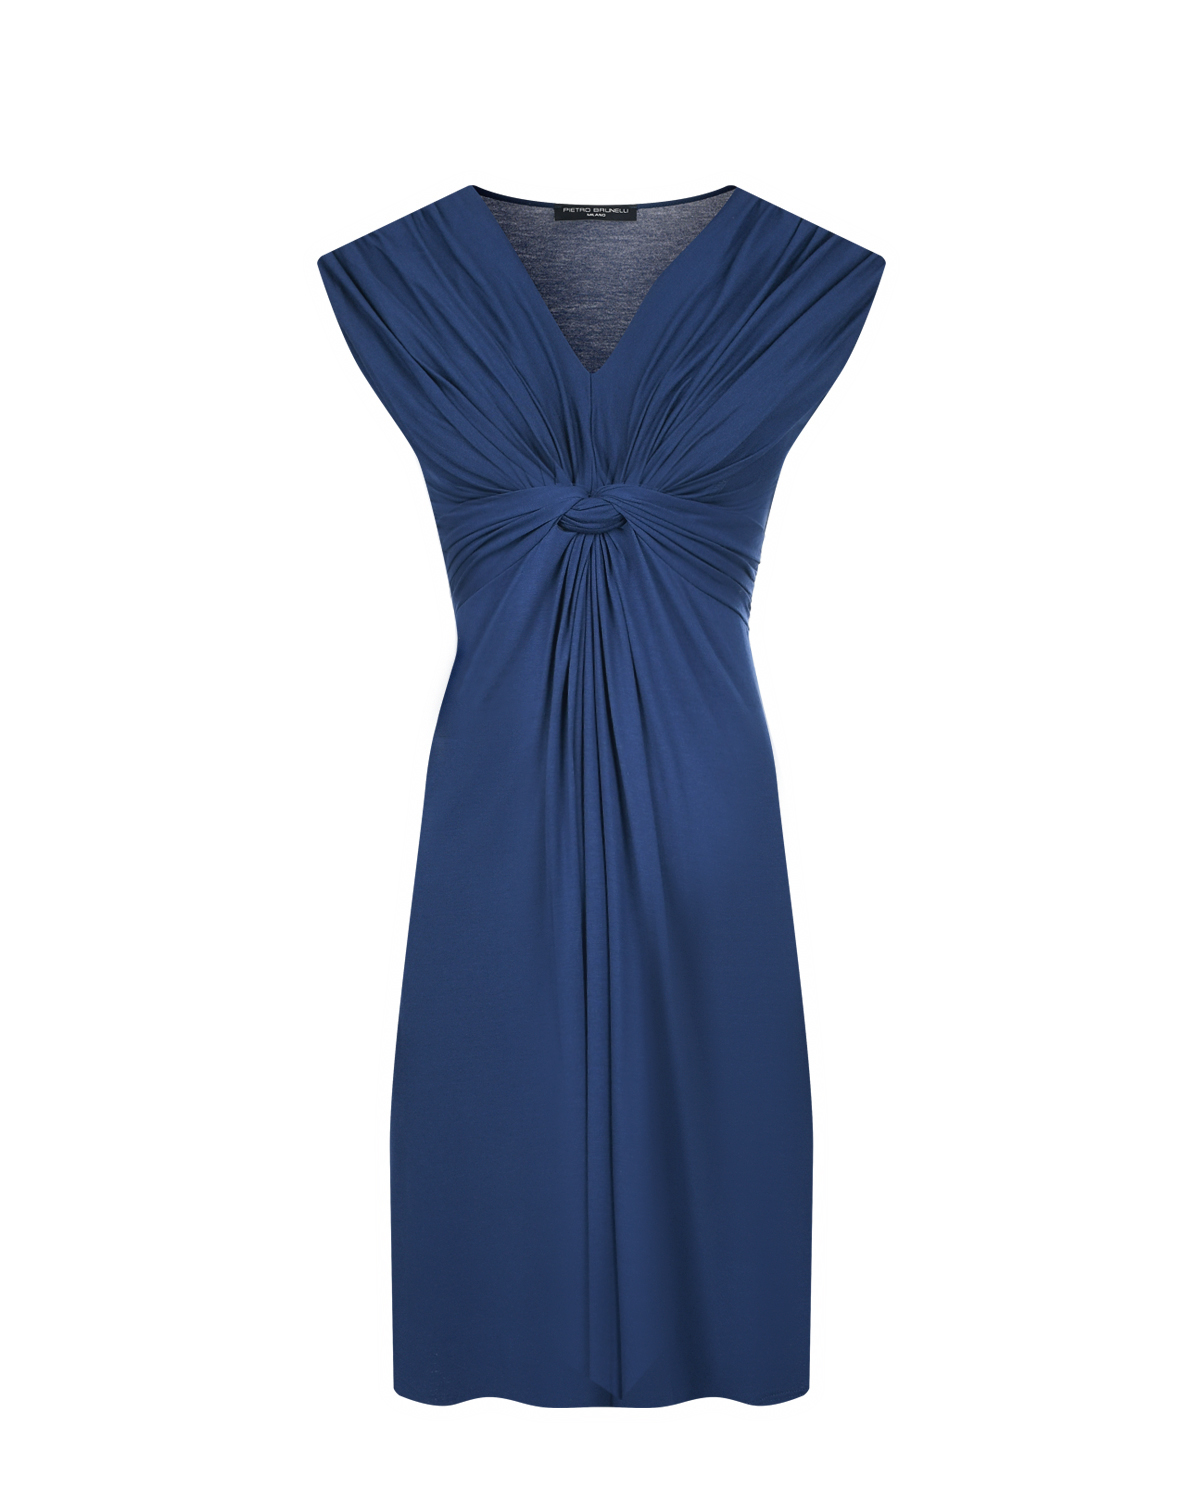 Платье синего цвета с функцией для кормления Pietro Brunelli синее платье для беременных pietro brunelli